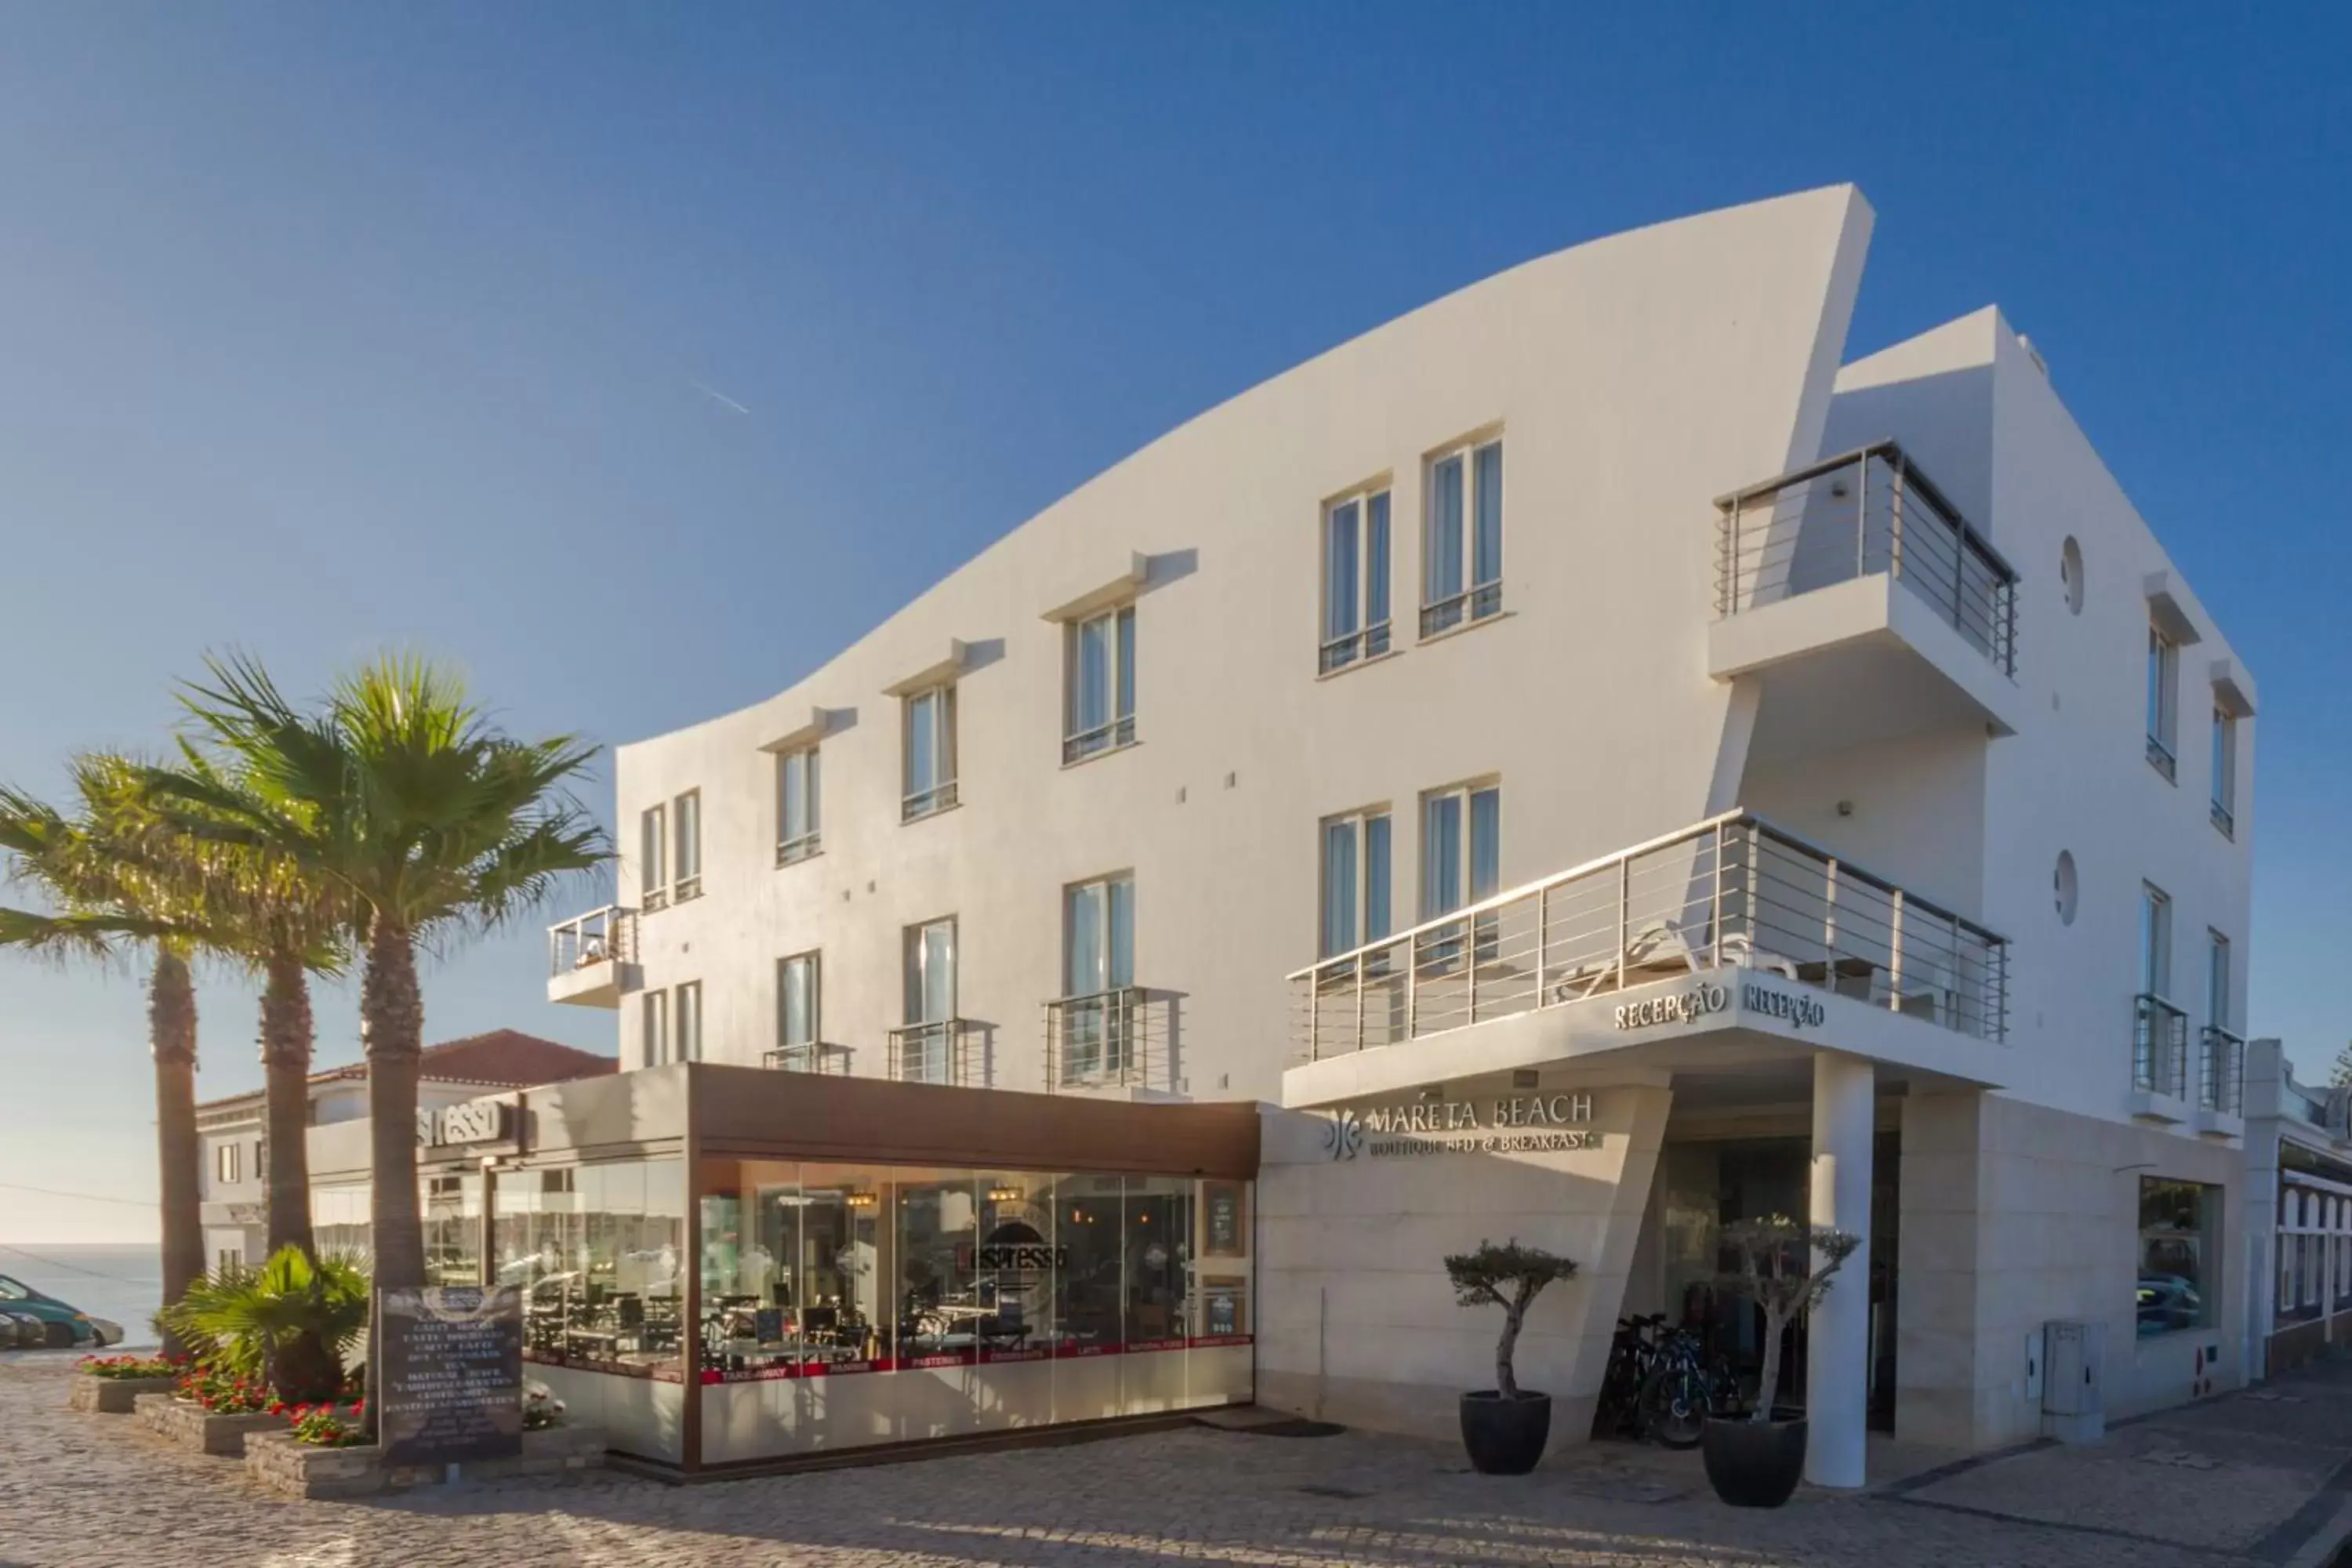 Facade/entrance, Property Building in Mareta Beach - Boutique Bed & Breakfast